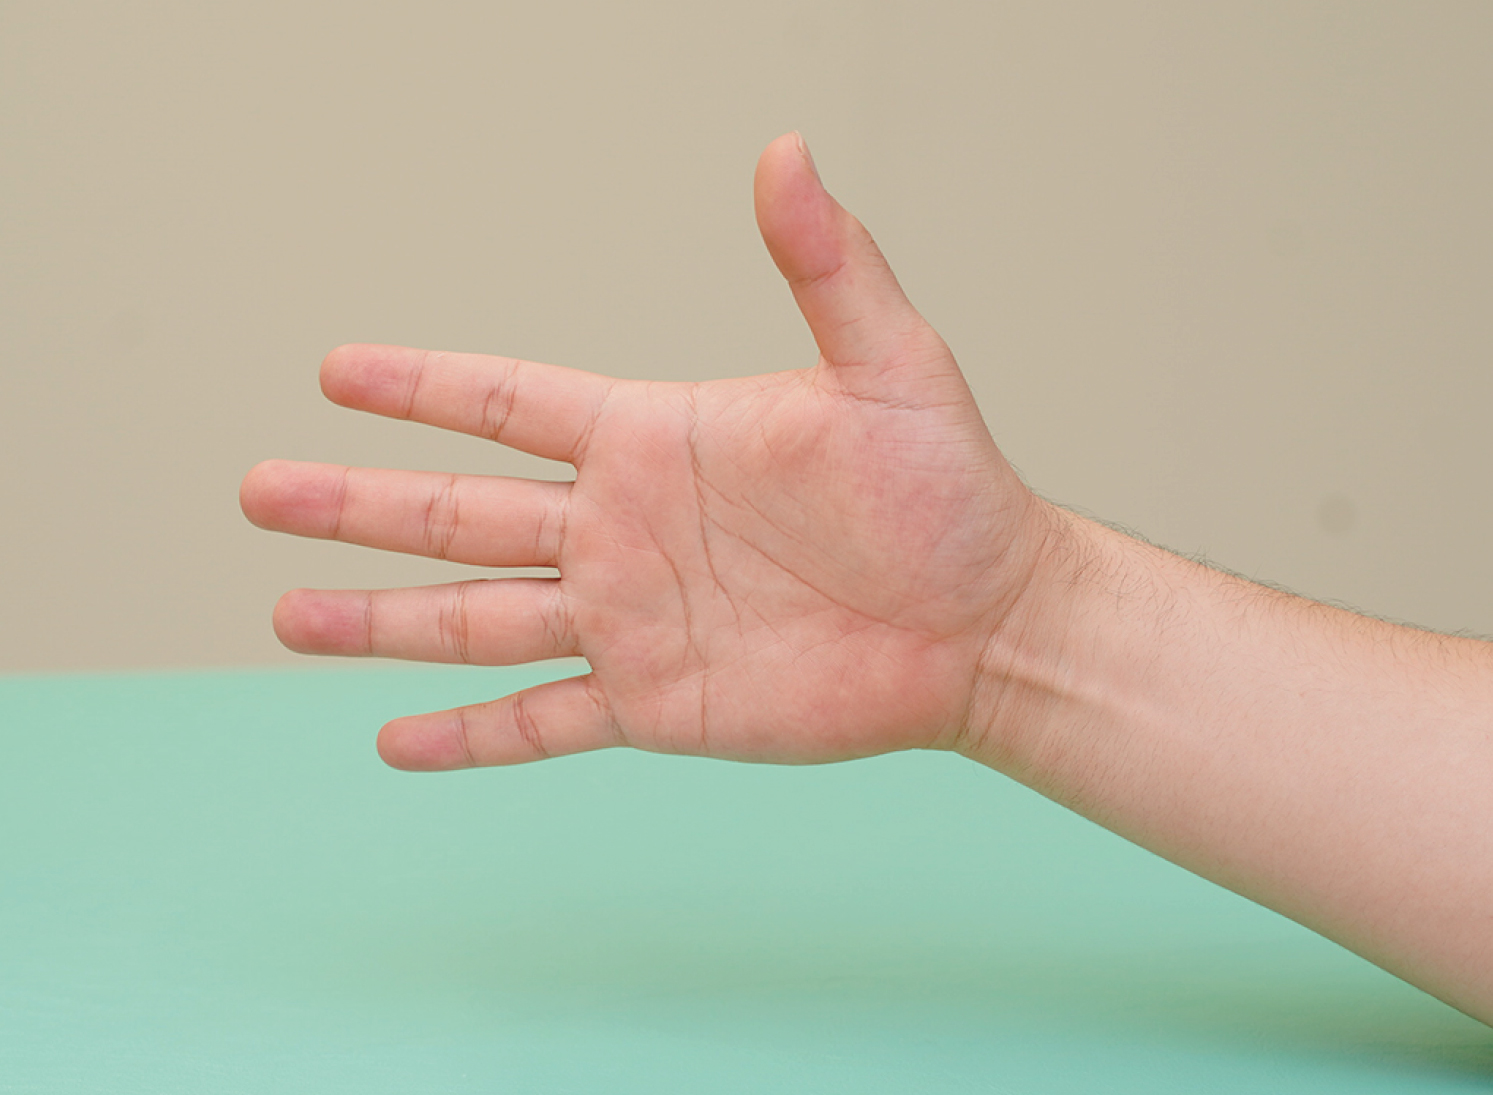 原因は手指の使い過ぎ 再発したくない人のための腱鞘炎の治し方 Curecare キュアケア 痛みの改善から予防までを届けるメディア